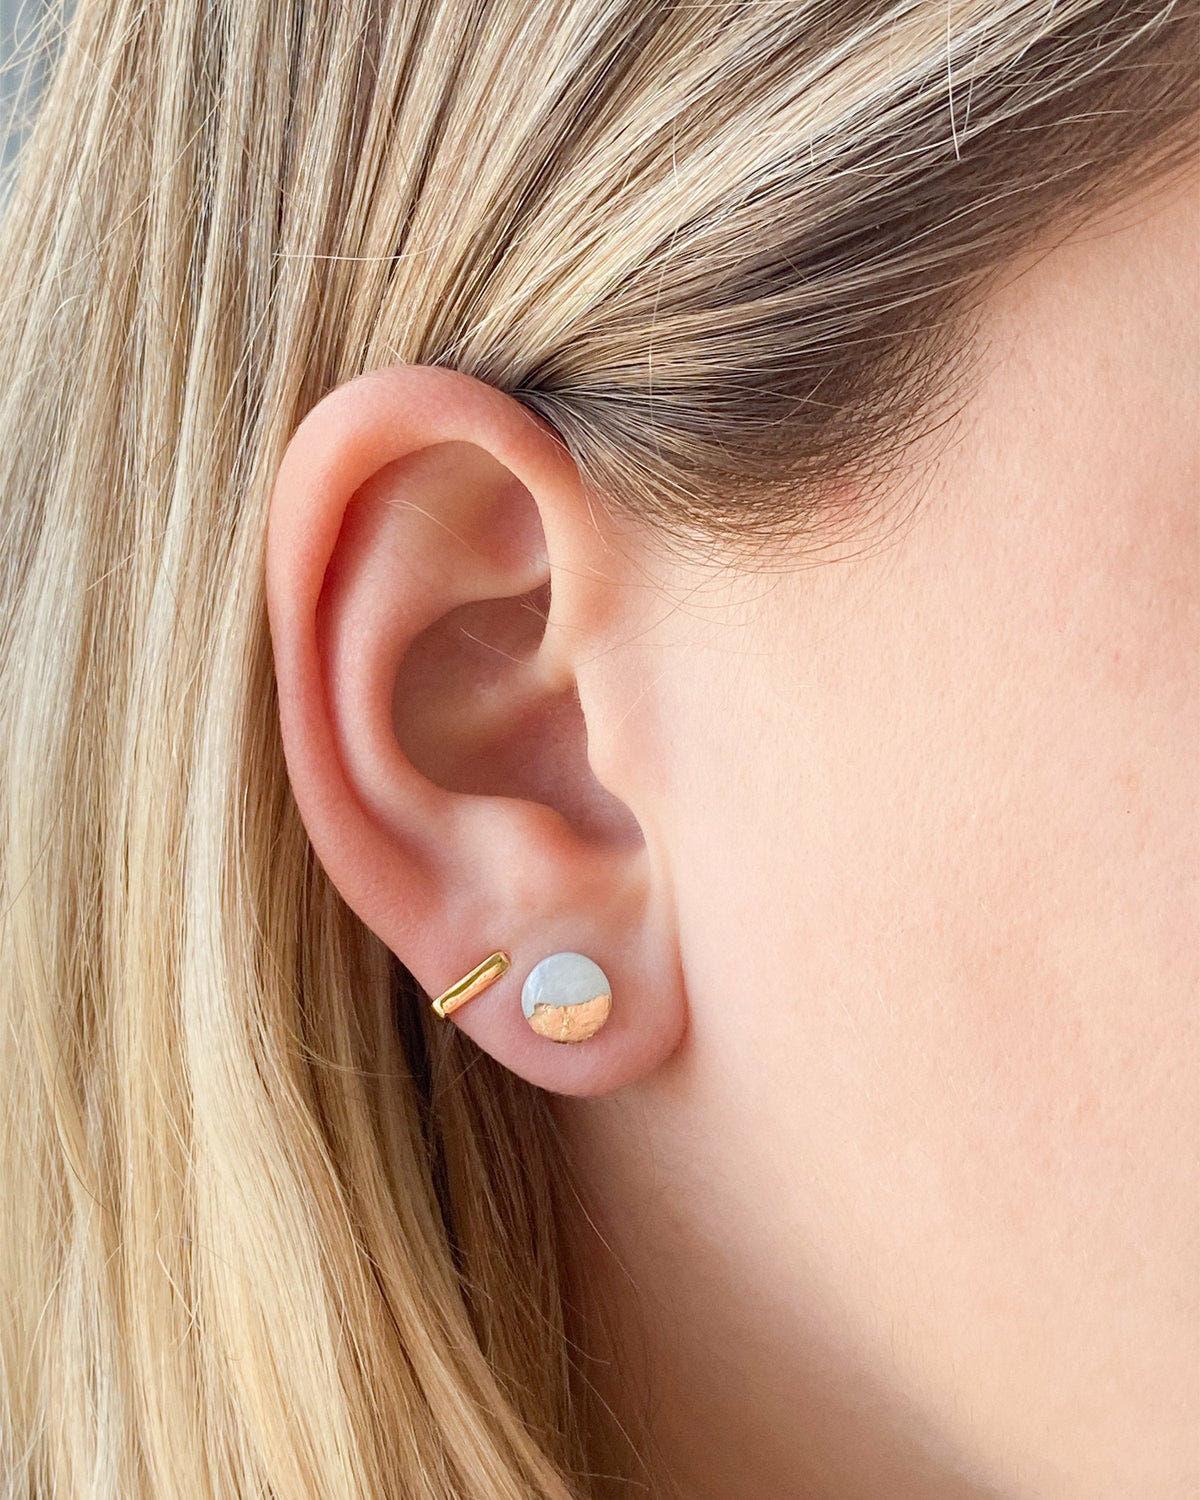 Pretty Sensitive Ears - Handmade Hypoallergenic Earrings